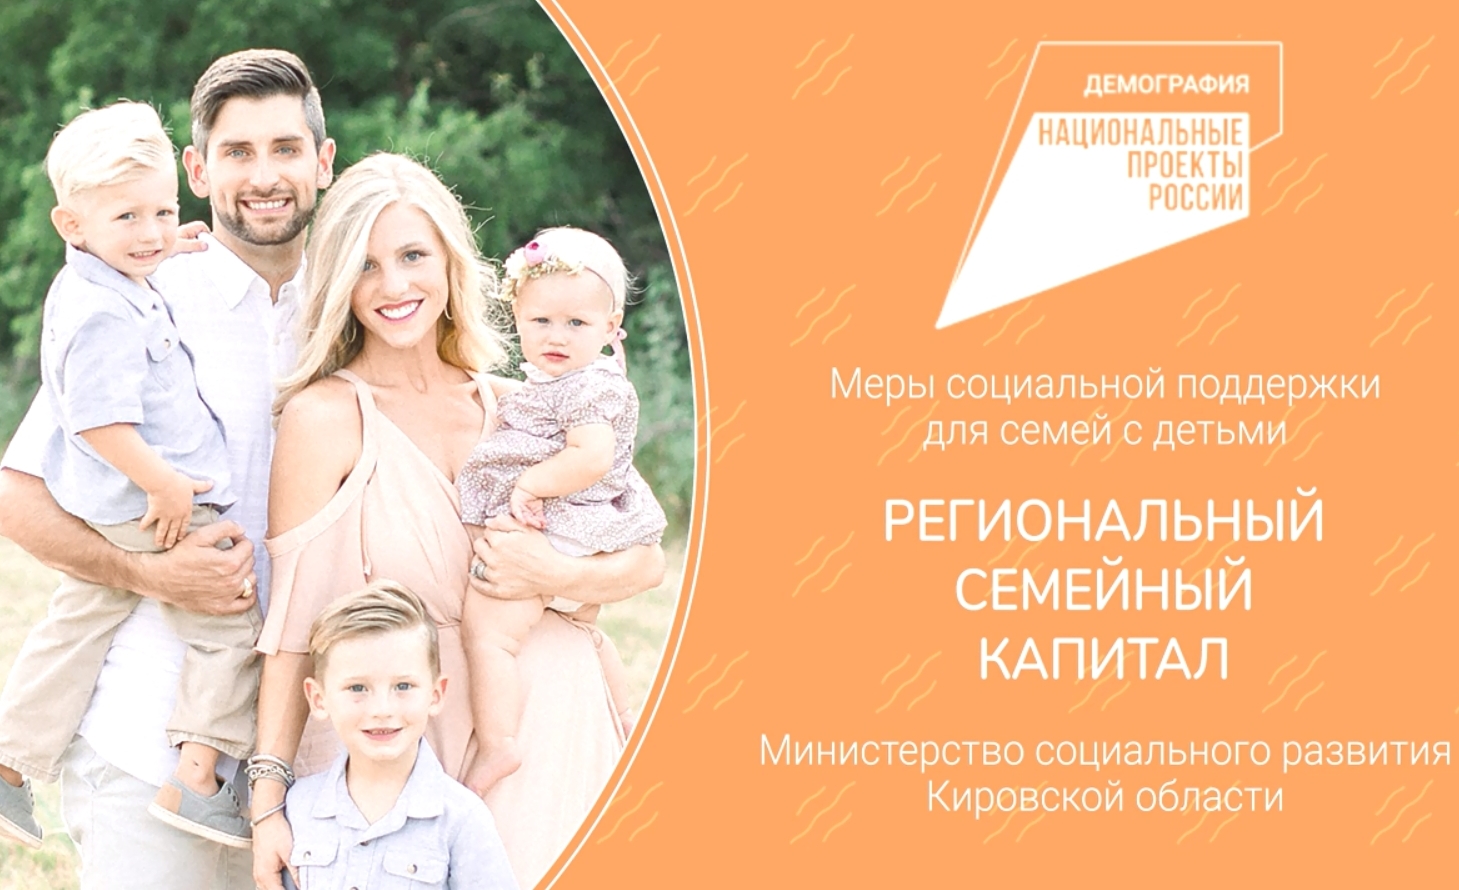 В целях информирования населения о мерах социальной поддержки, министерством социального развития Кировской области разработаны тематические социальные видеоролики.